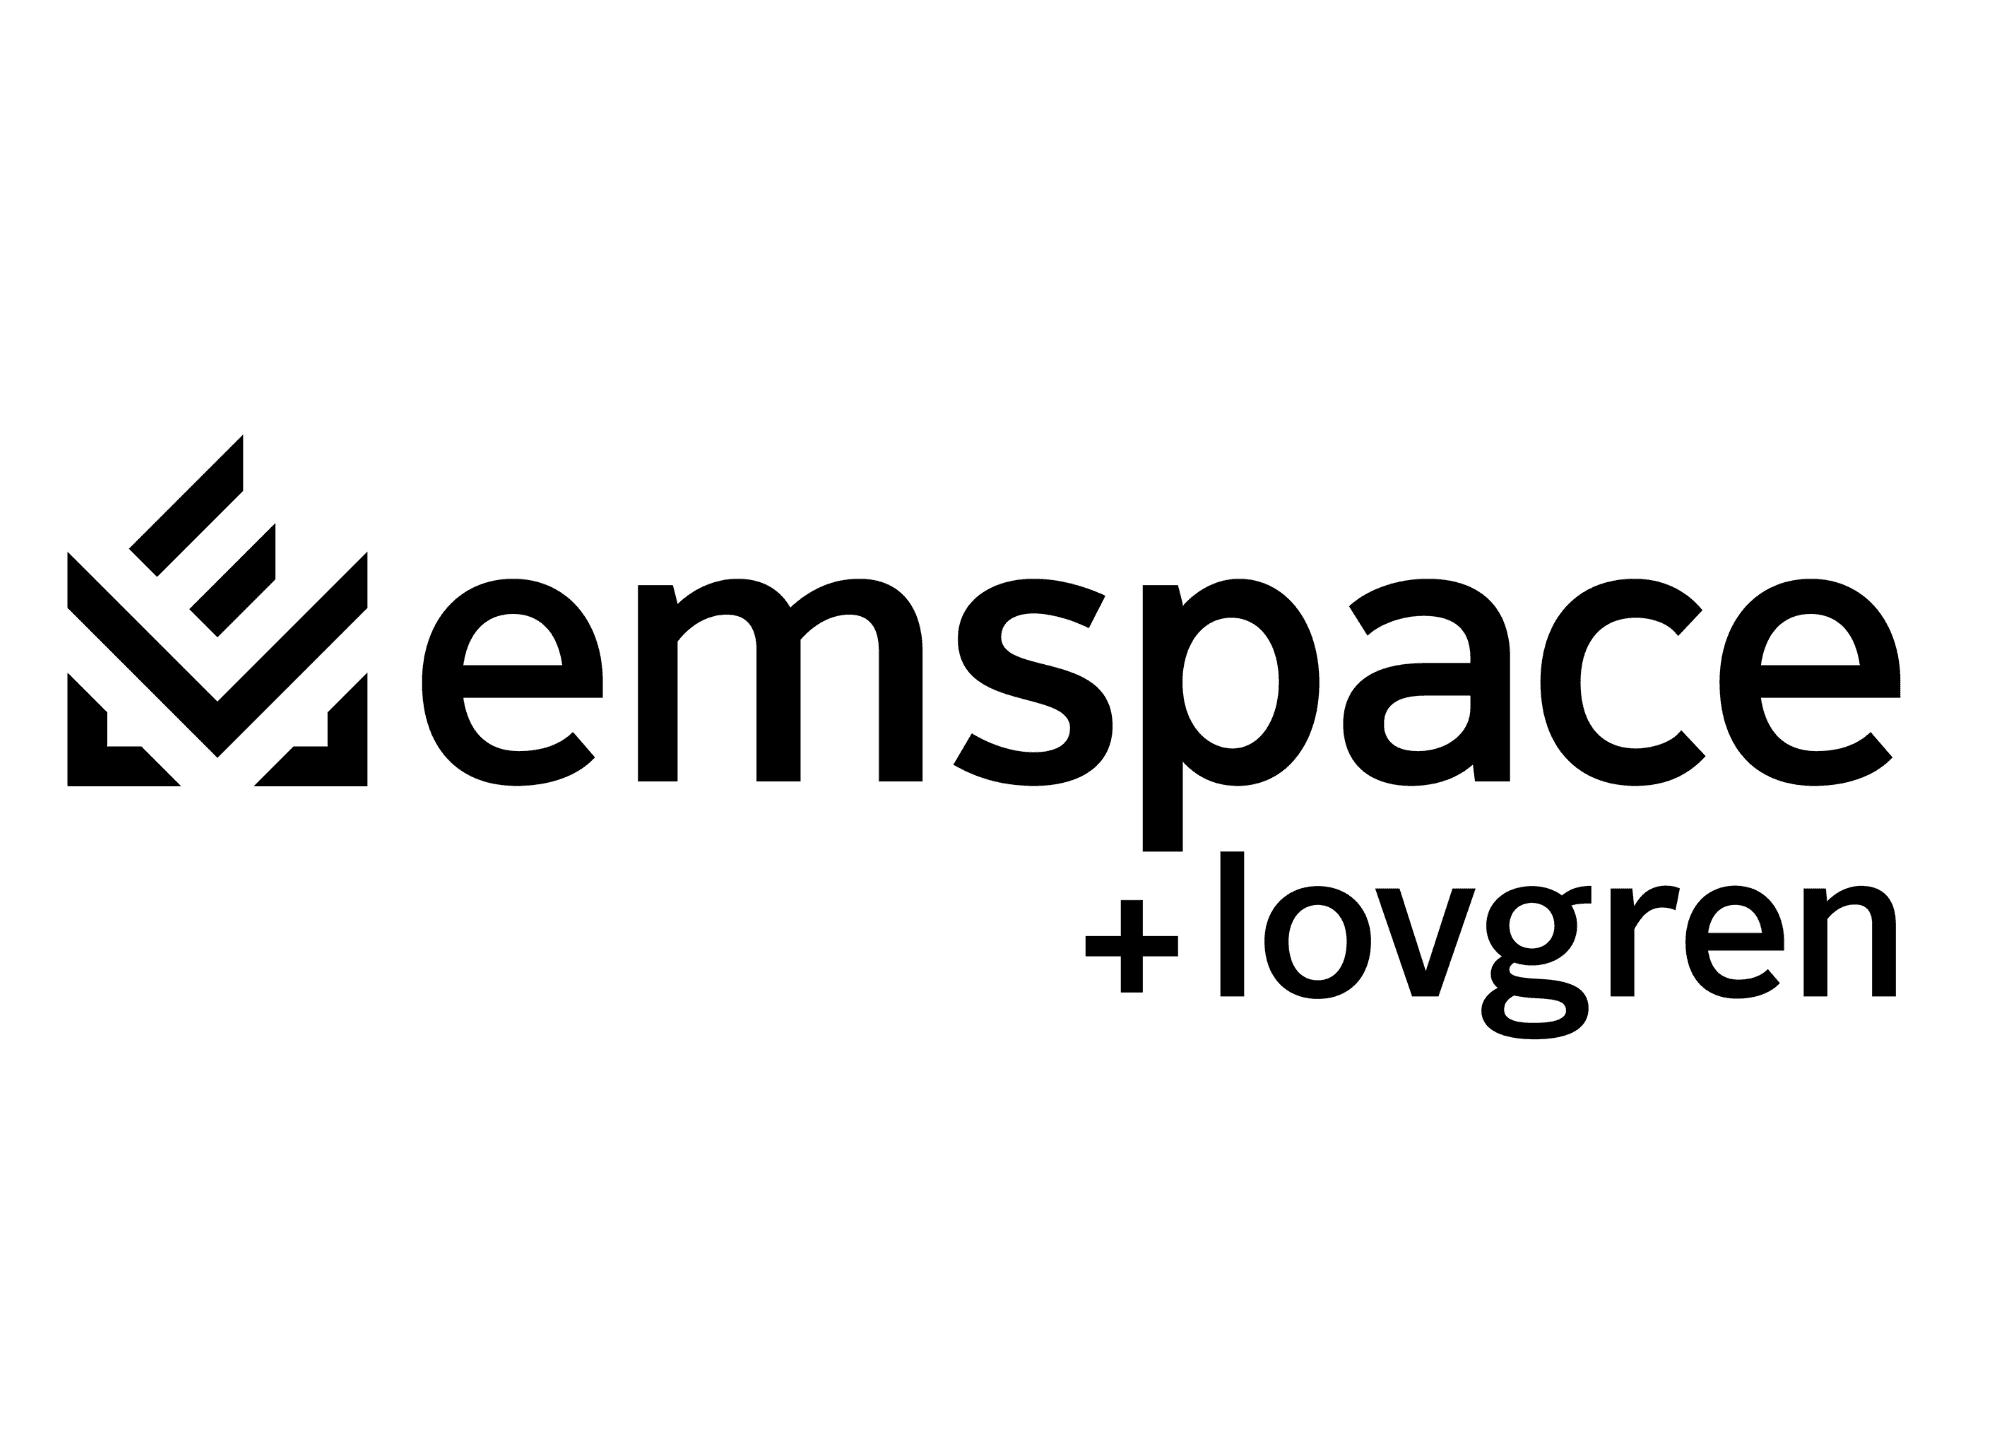 Emspace + Lovgren